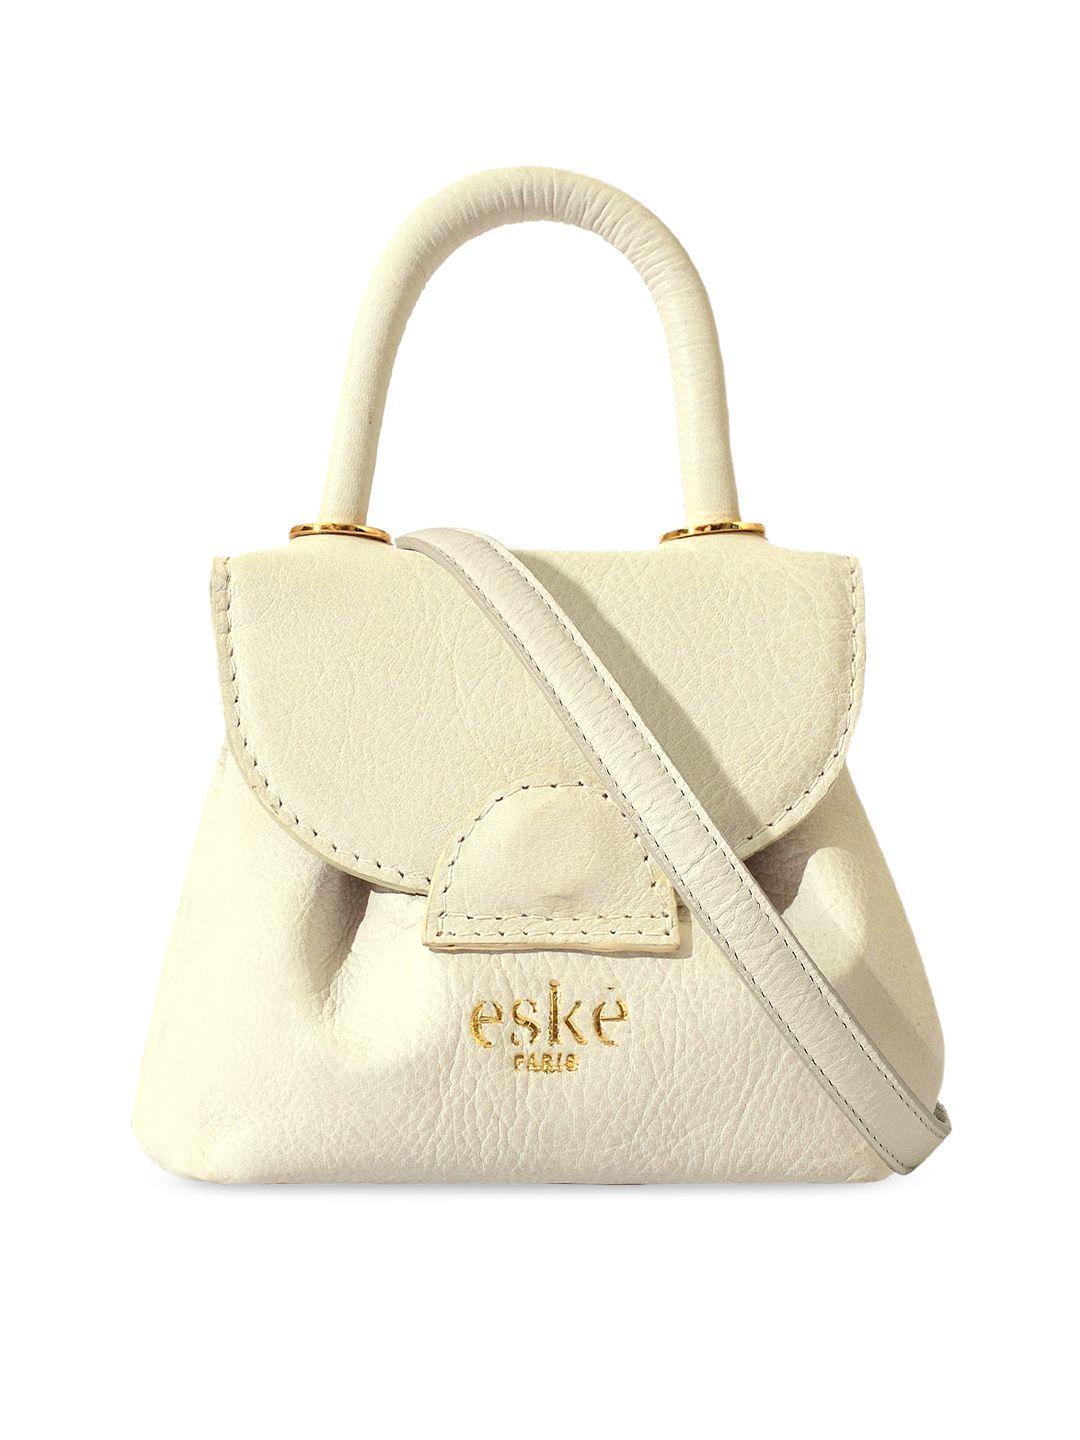 eske textured leather structured handheld bag